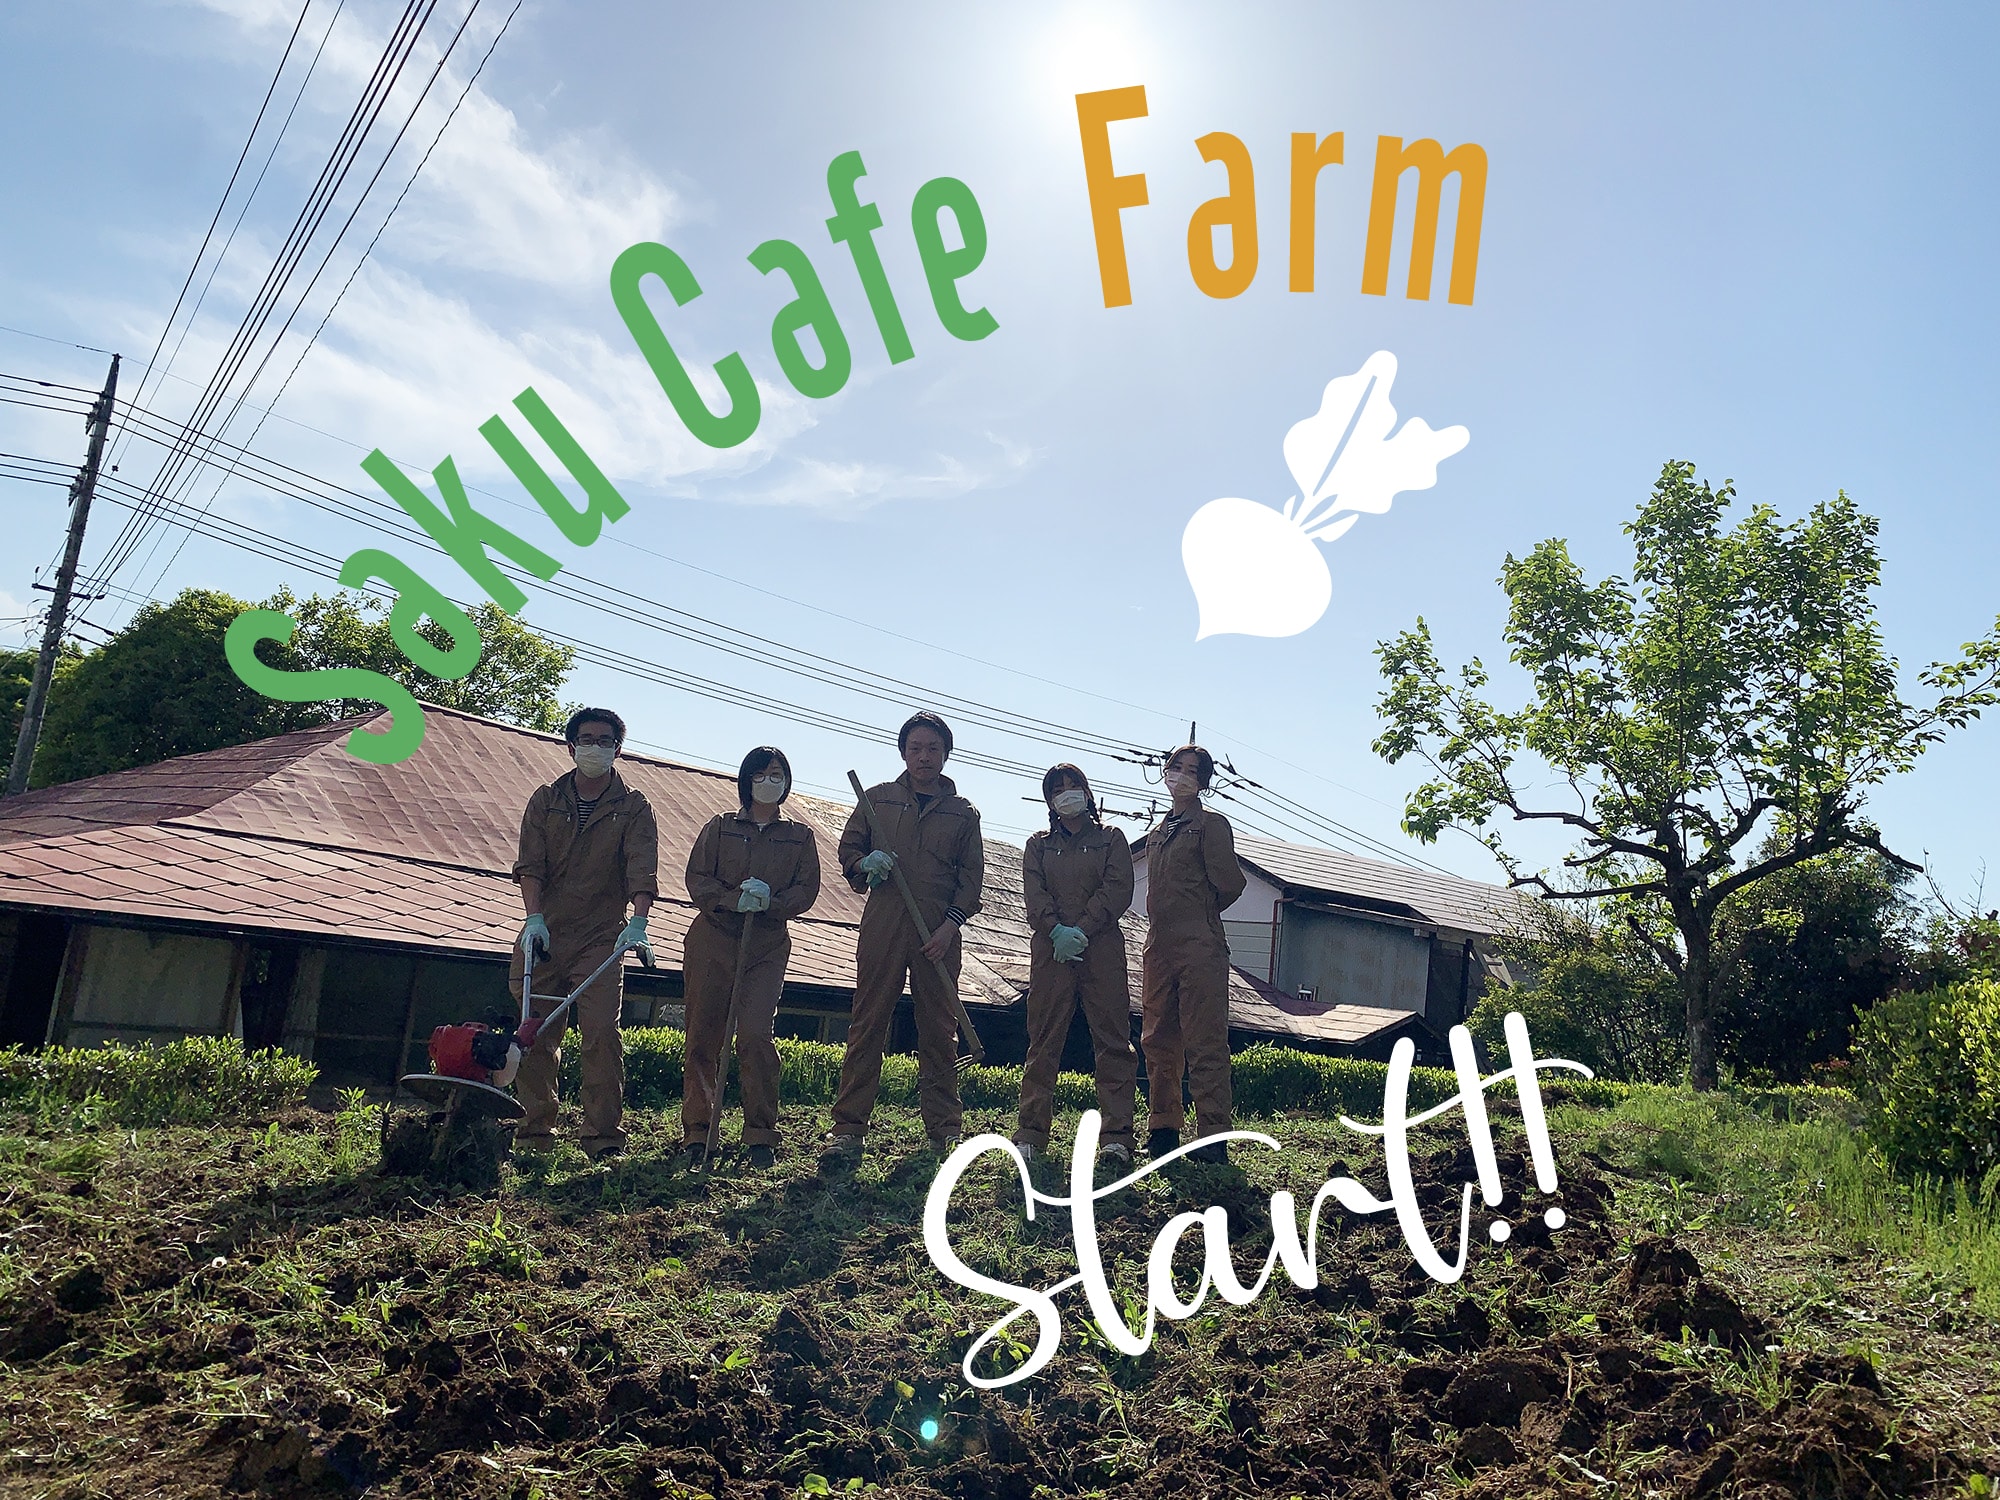 咲くカフェ Farm